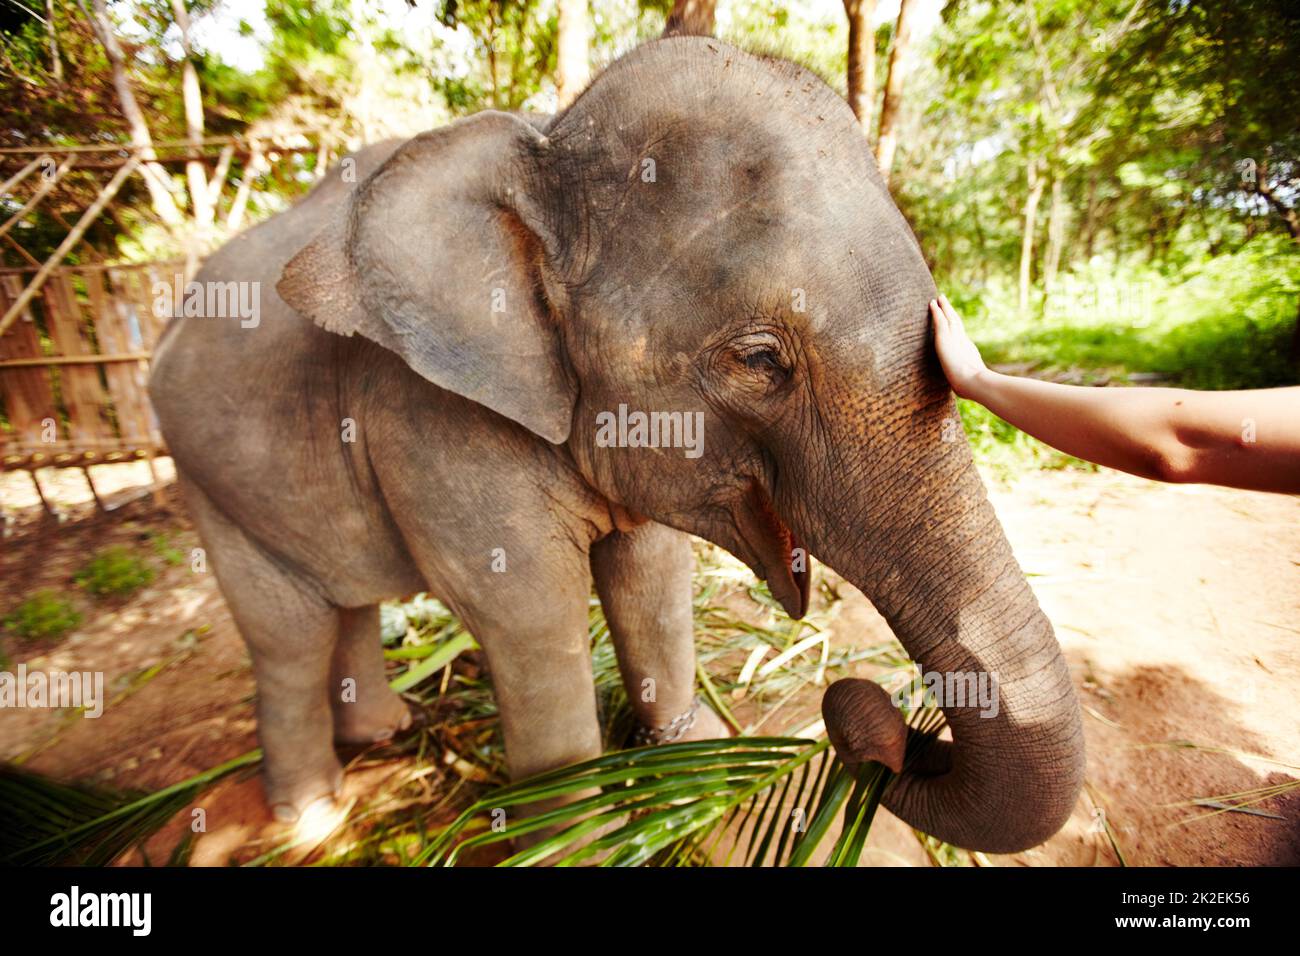 Indici dei massimi di Elephas. Un eco-turista che raggiunge fuori per carezzare un vitello elefante asiatico - Thailandia. Foto Stock